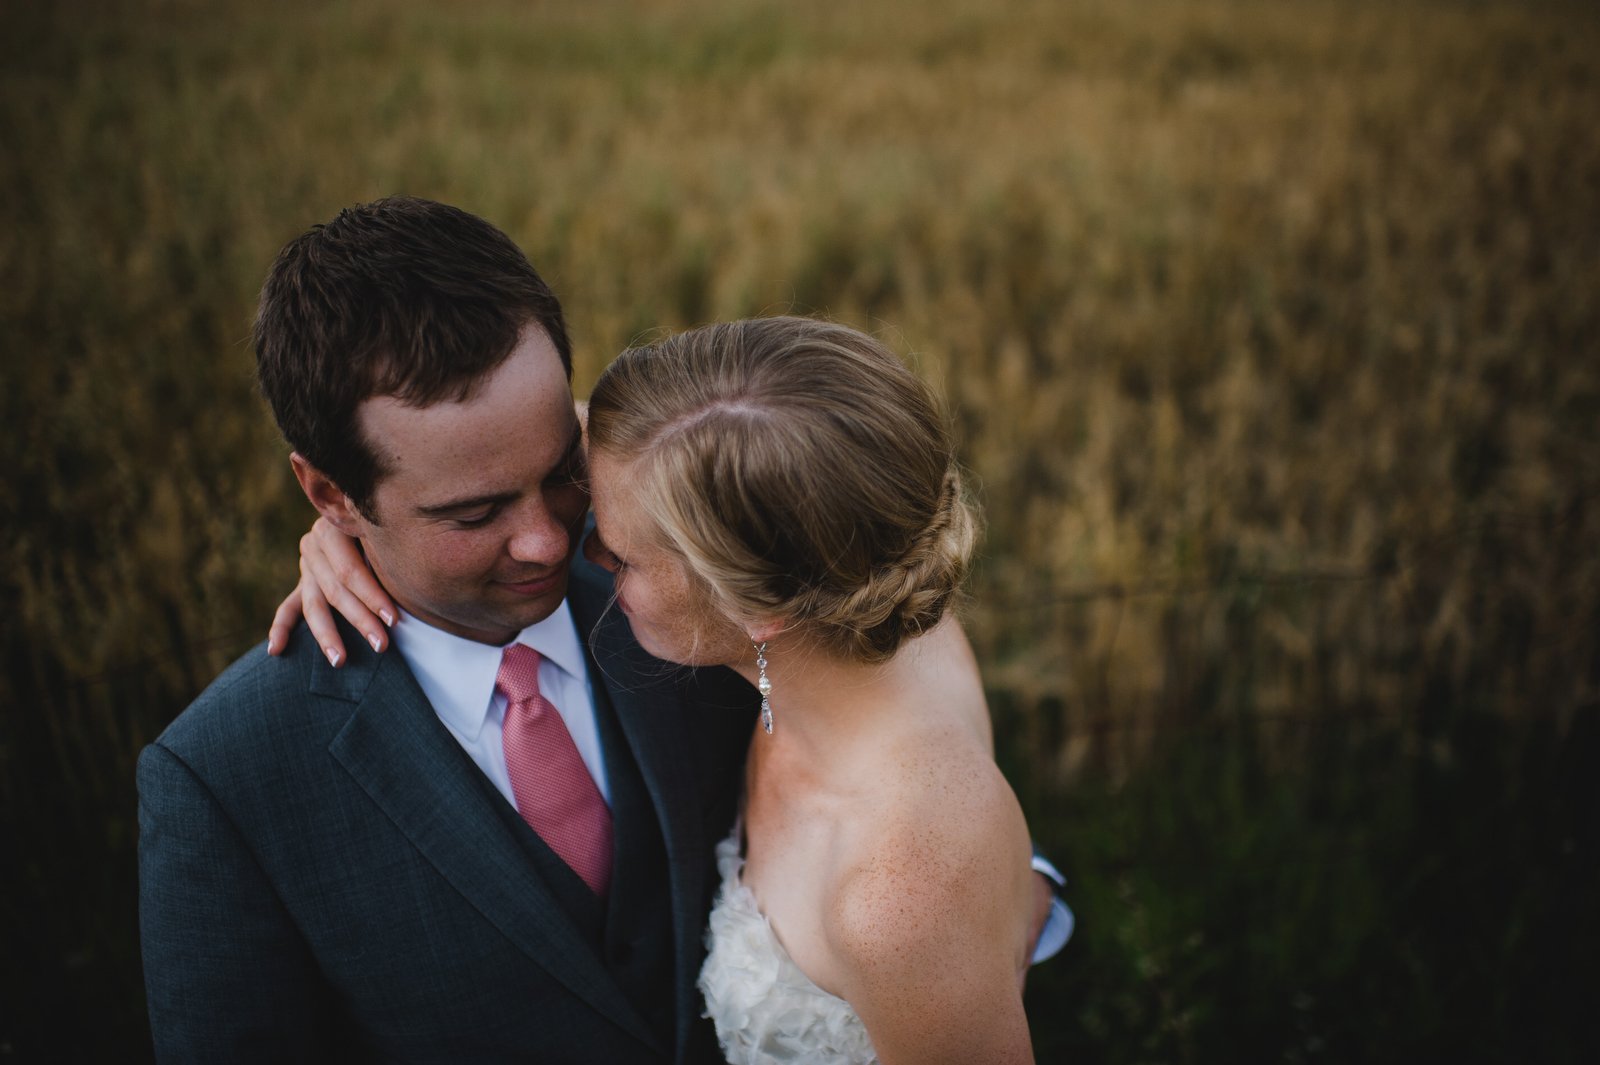 wedding photos in wheat fields | ontario backyard wedding | farm wedding near guelph ontario